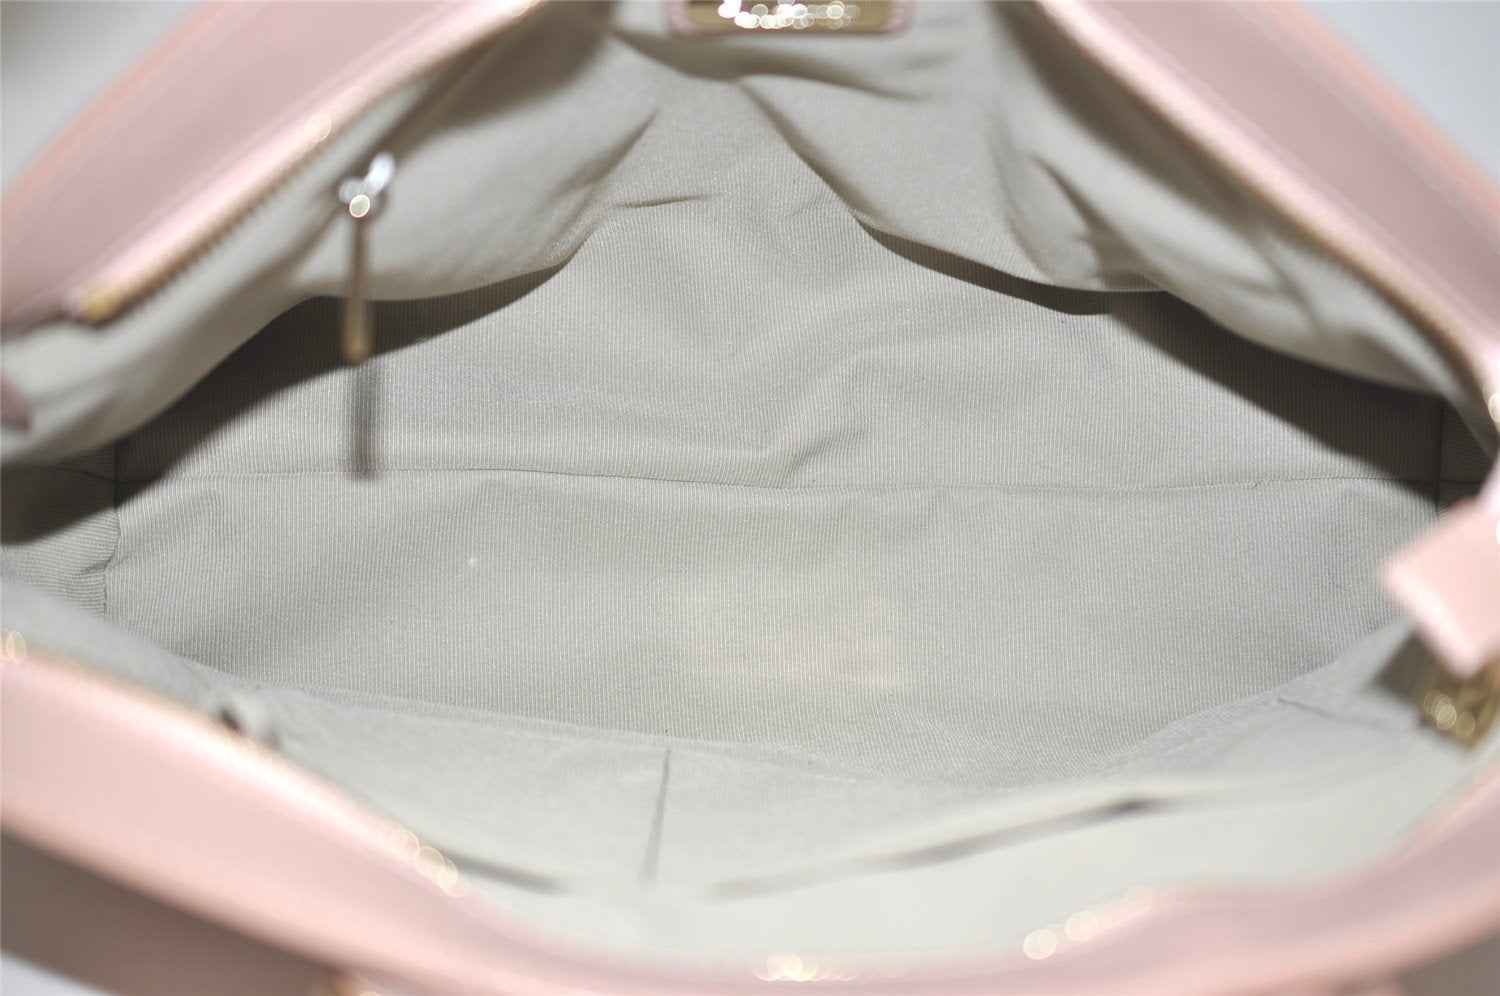 Authentic FURLA Vintage Agata M Leather 2Way Shoulder Tote Bag Pink 4781I